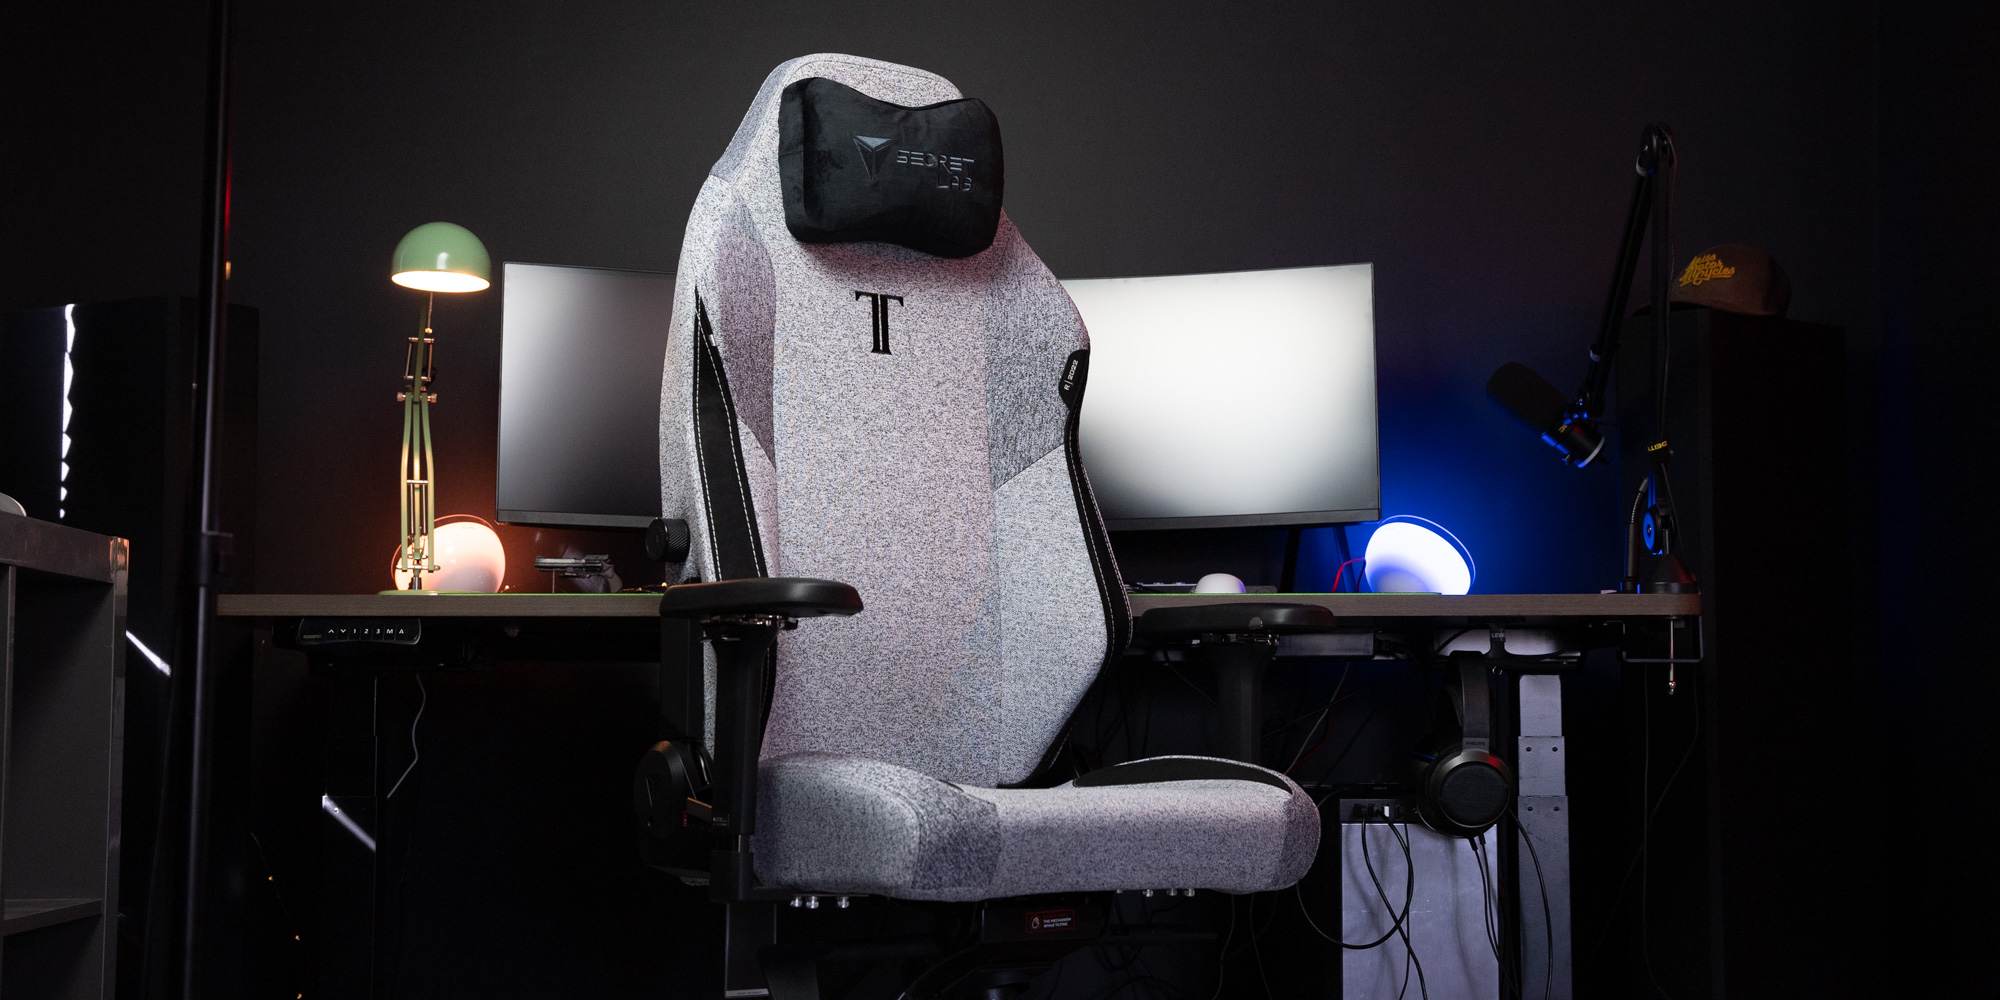 Secretlab Titan gaming chair review